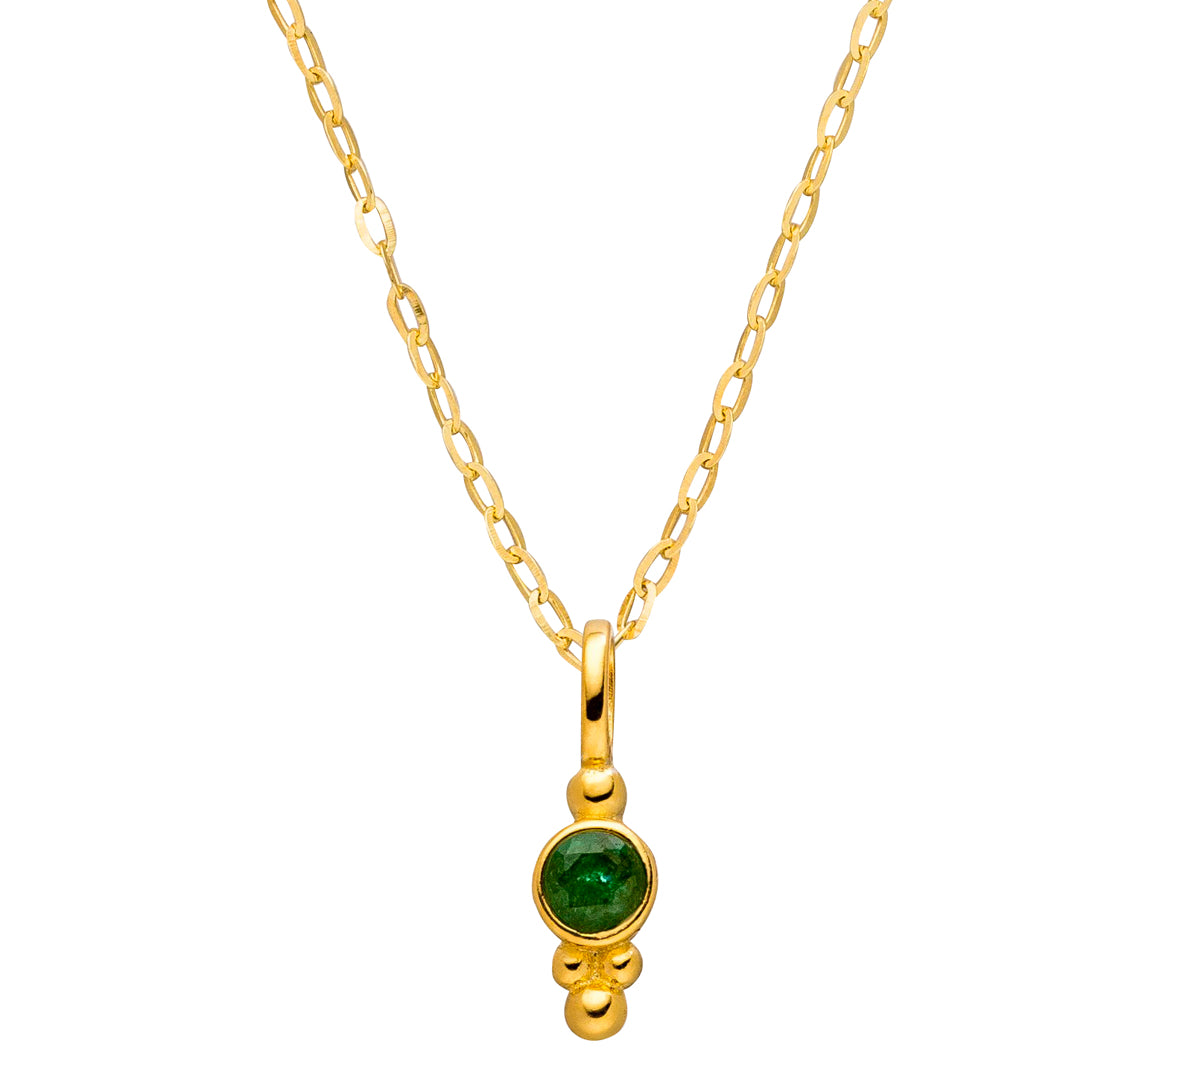 Geburtsstein Kette Mail mit grünem Smaragd an Gold- und Silberkette in verschiedenen Längen.